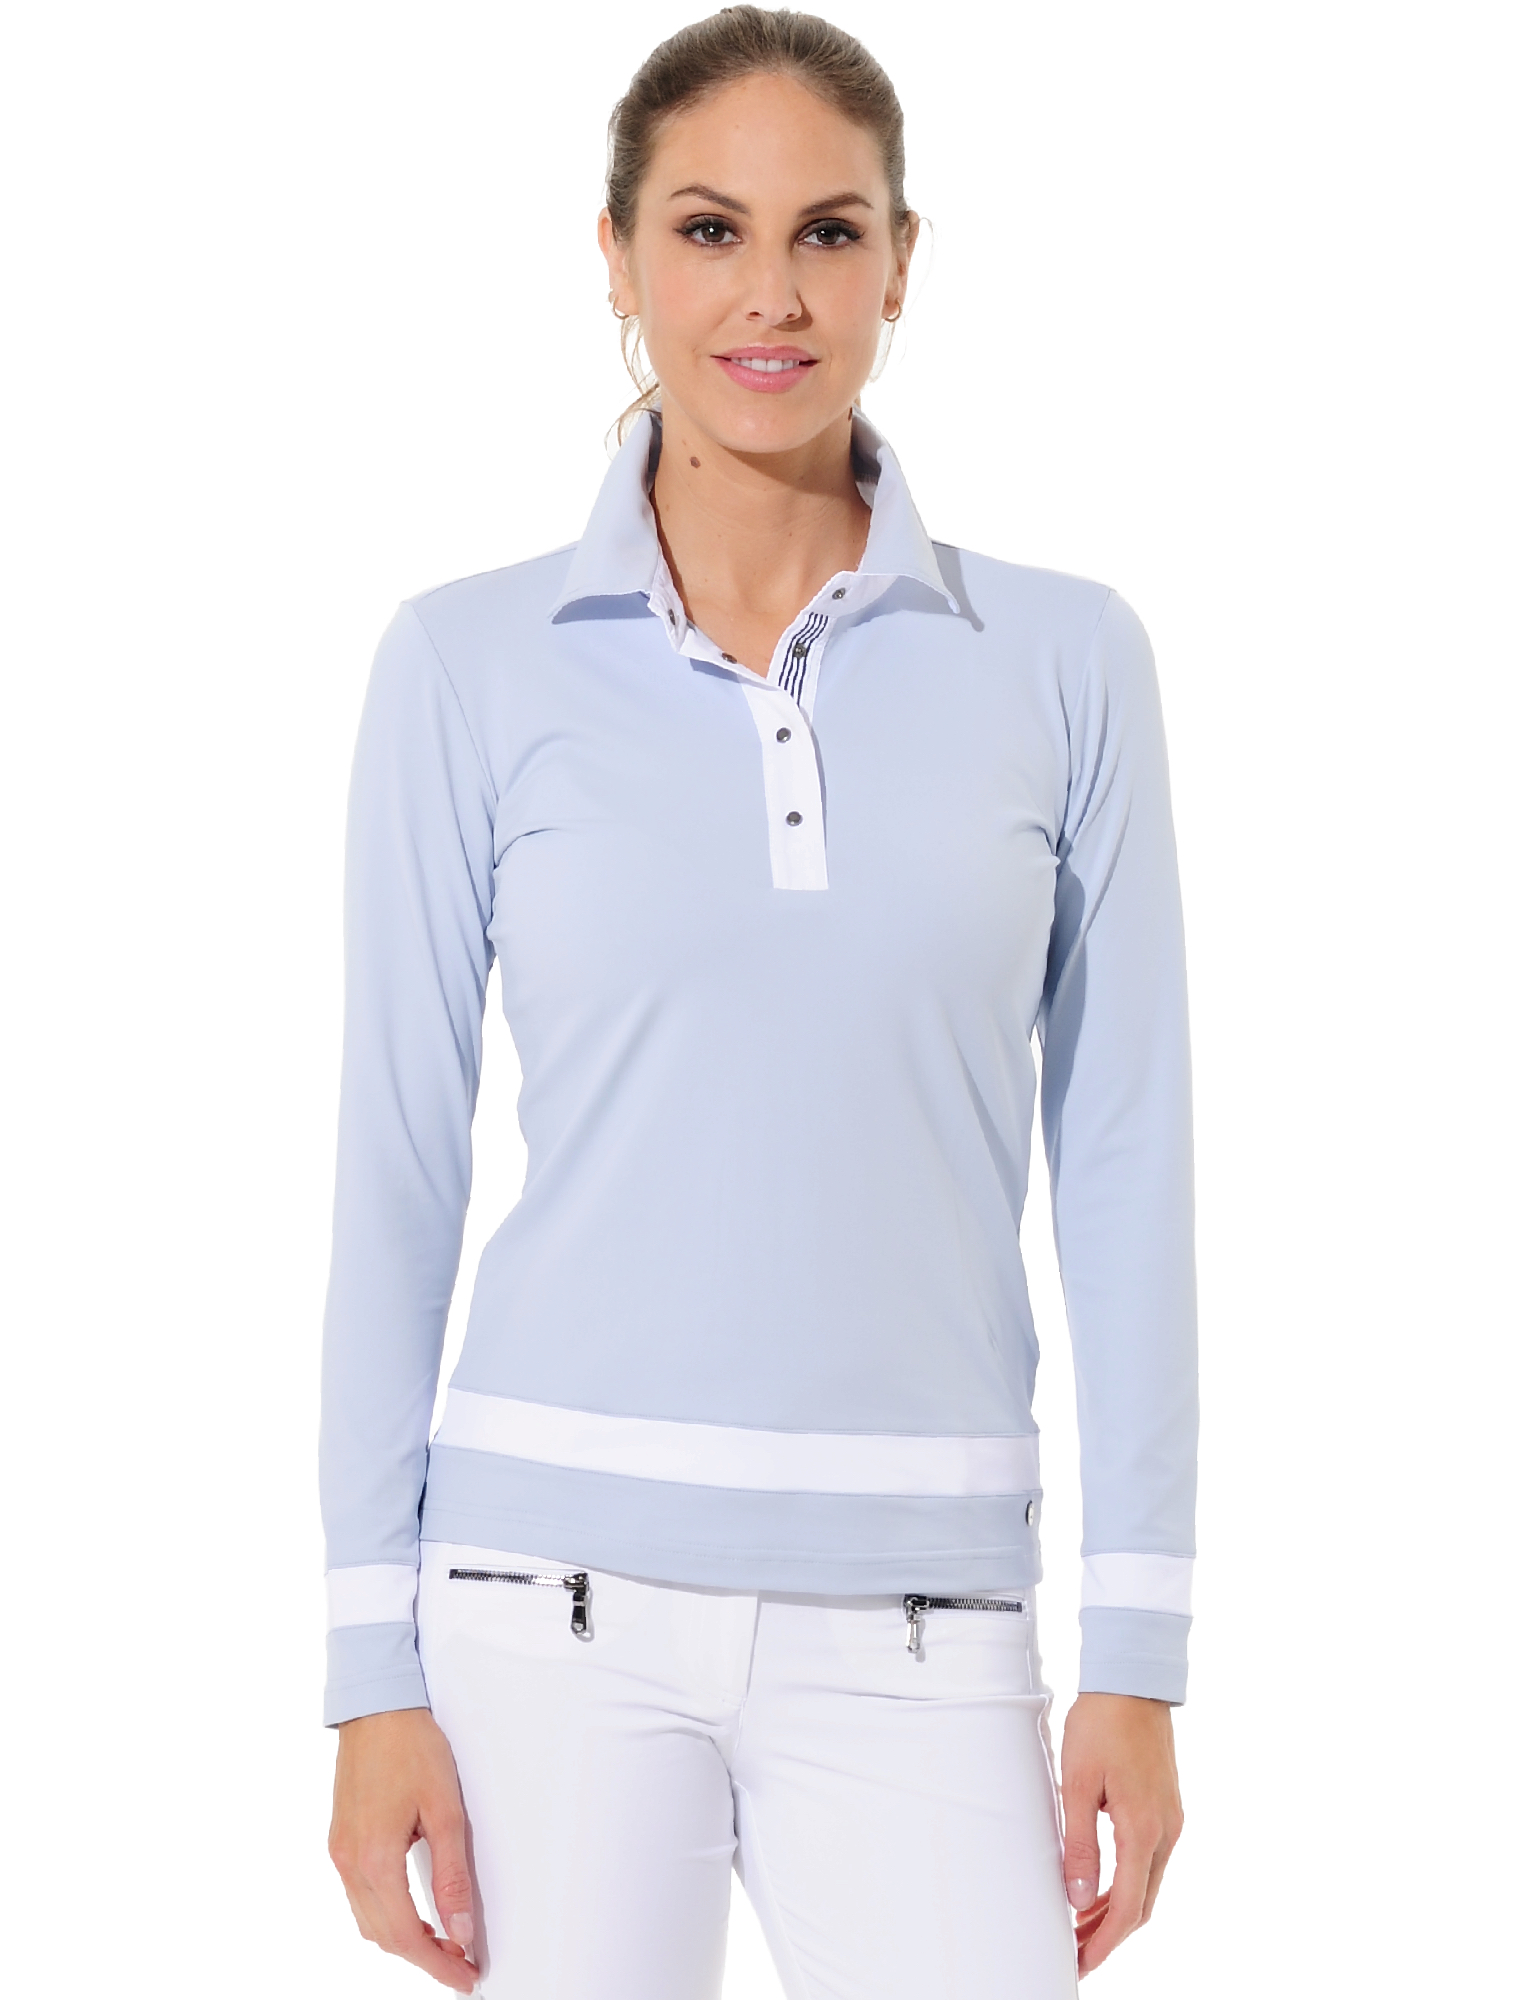 Jersey golf polo shirt cloud 